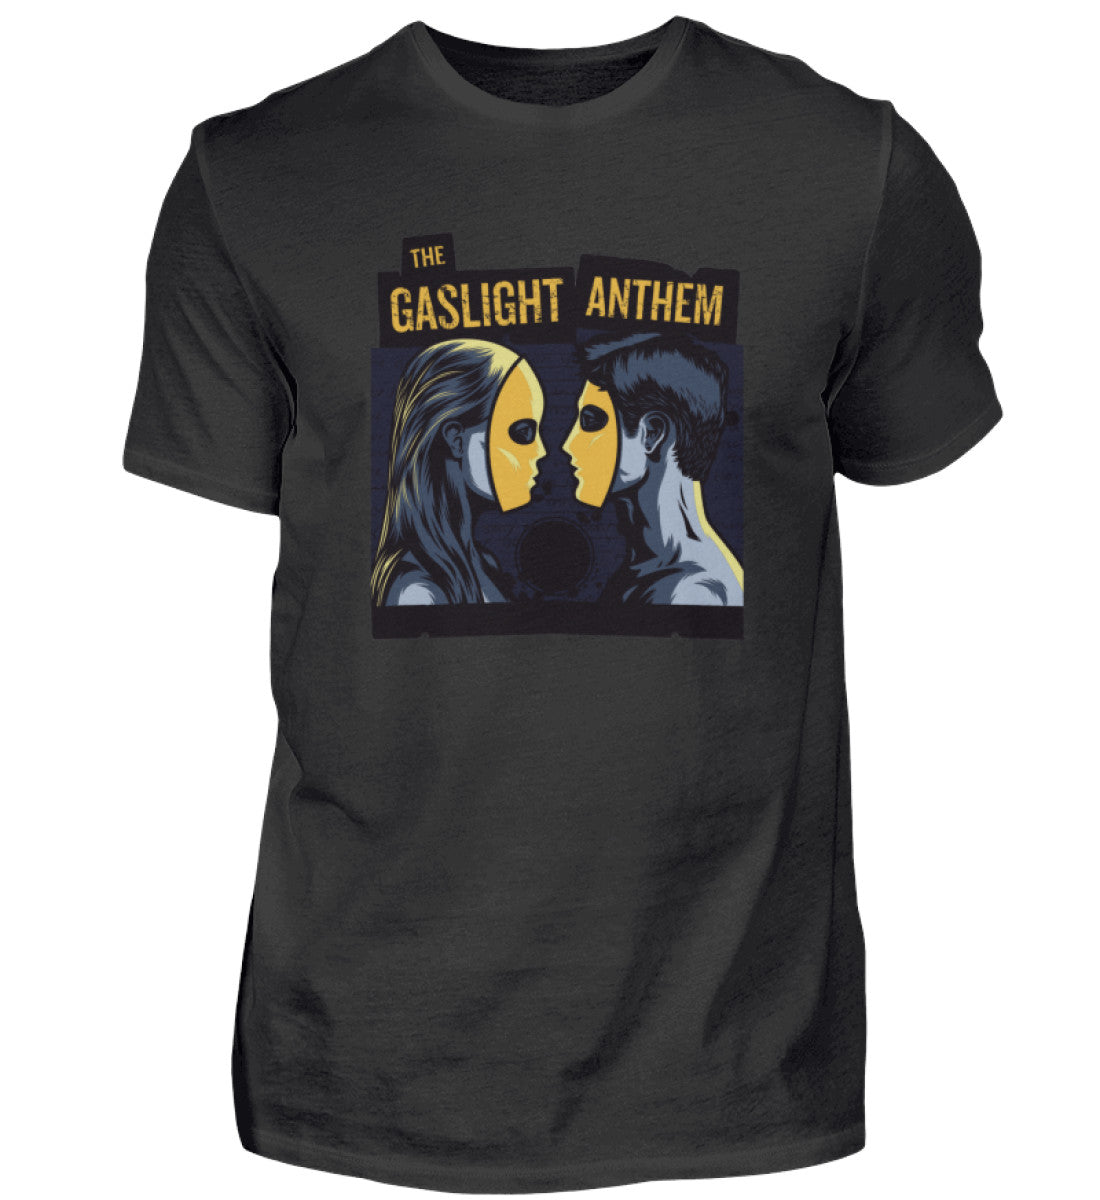 The Gaslight Anthem T-Shirt Men